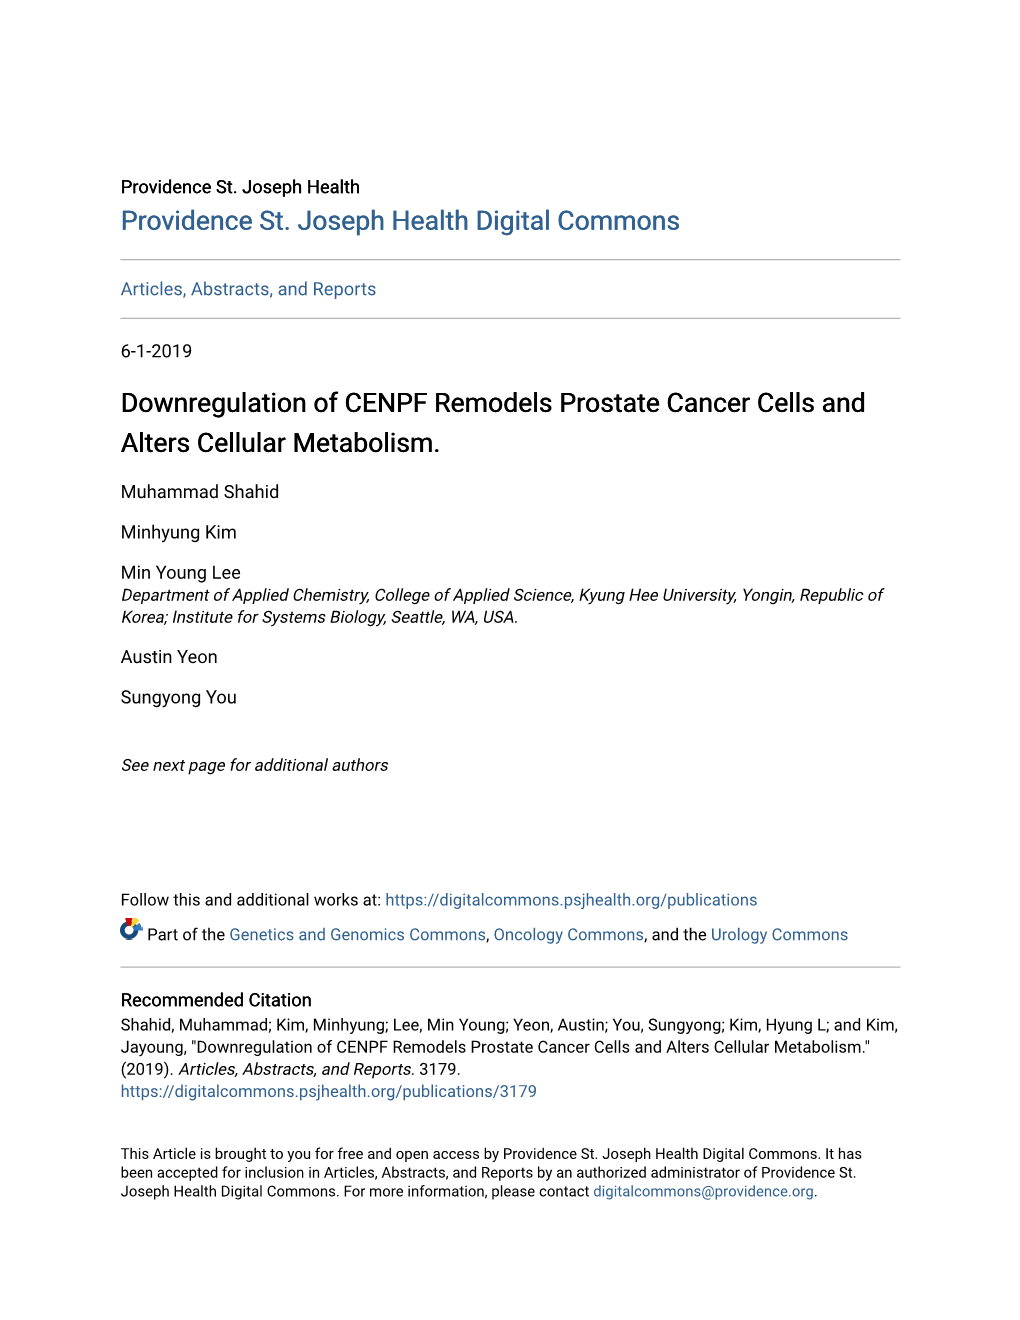 Downregulation of CENPF Remodels Prostate Cancer Cells and Alters Cellular Metabolism